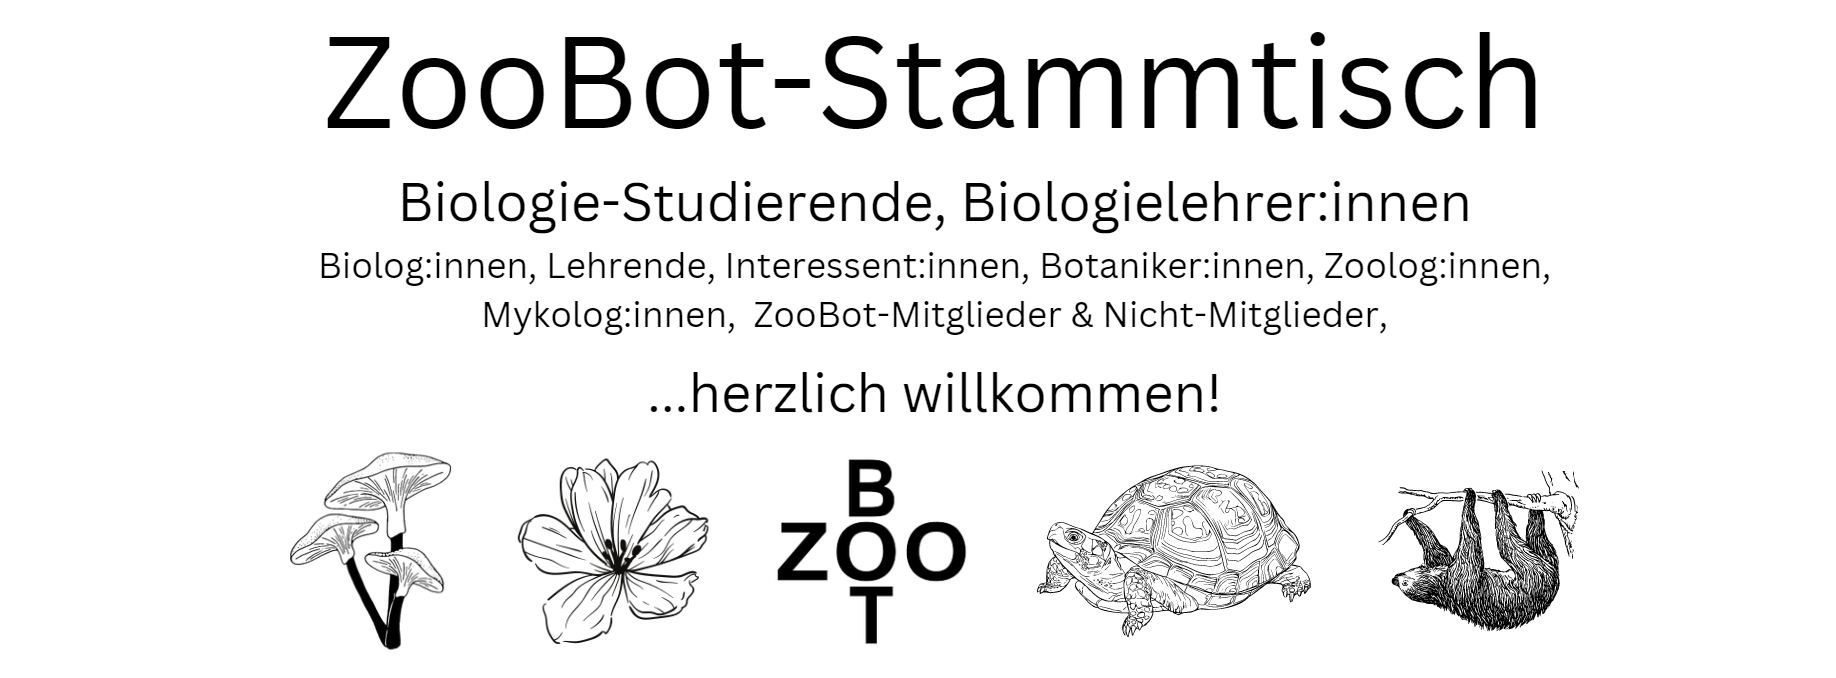 Wiener ZooBot-Stammtisch am 03.10.23